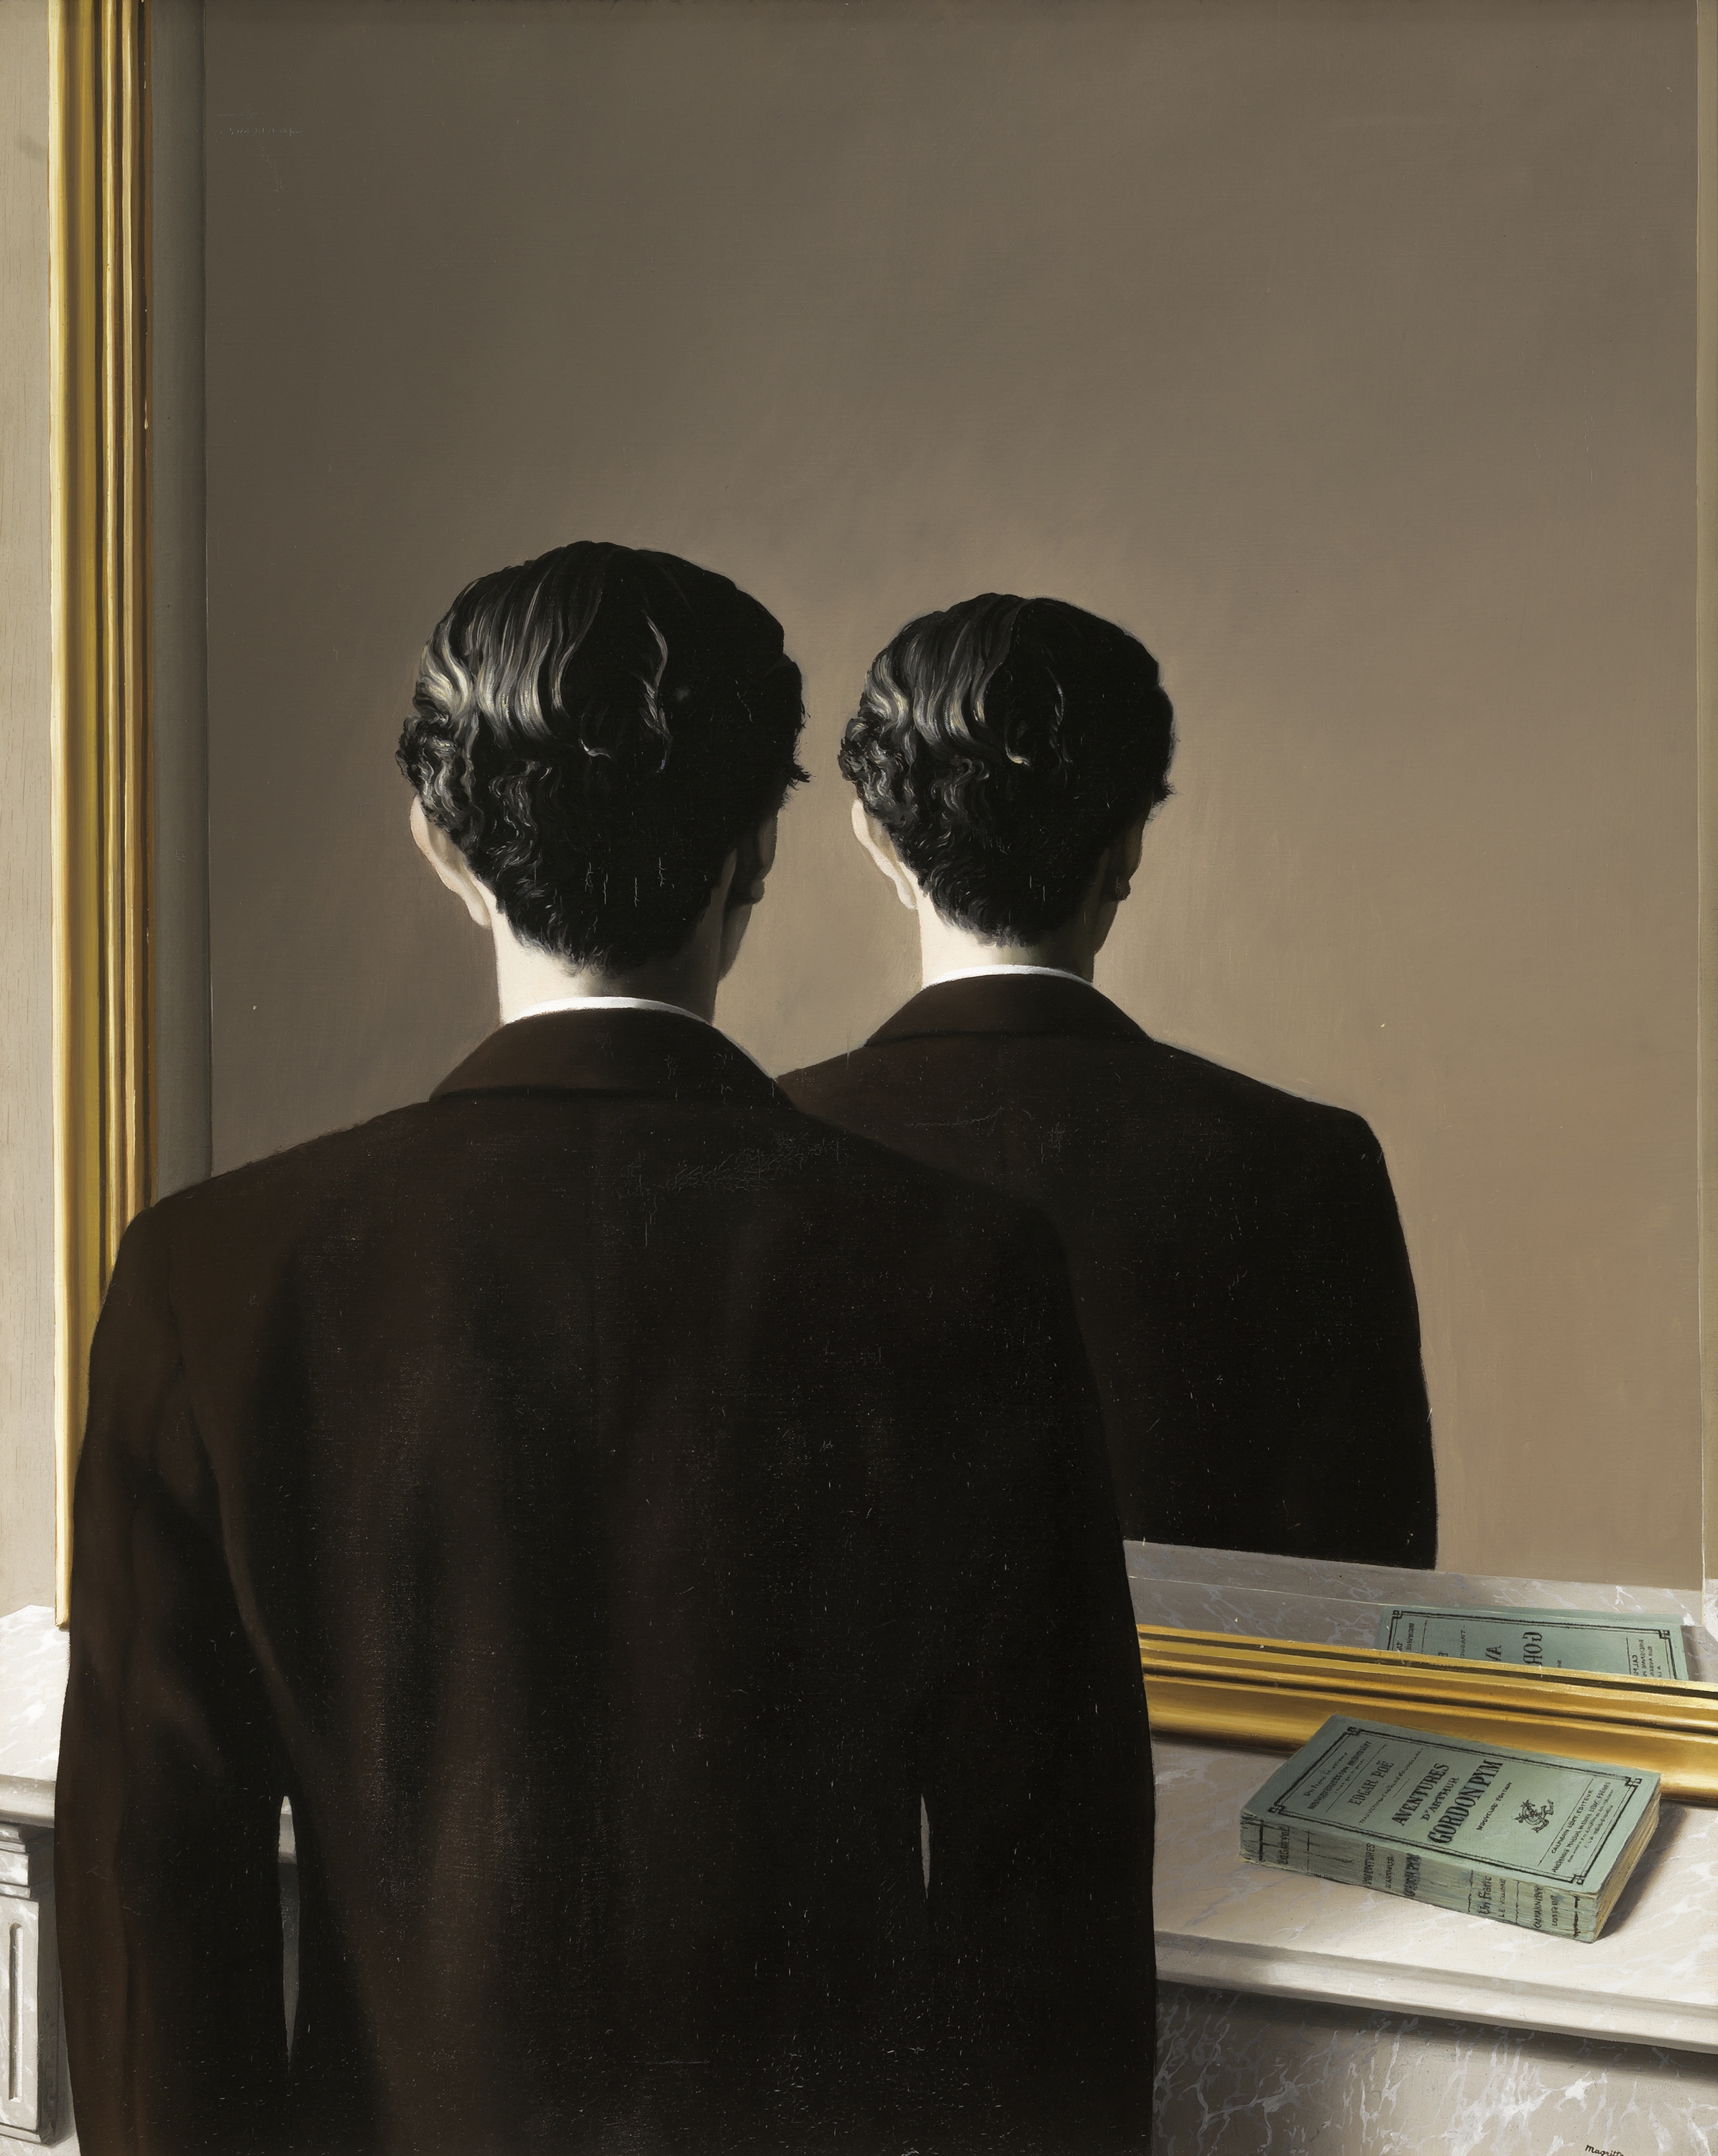 Ne pas reproduire by René Magritte - 1937 collection privée